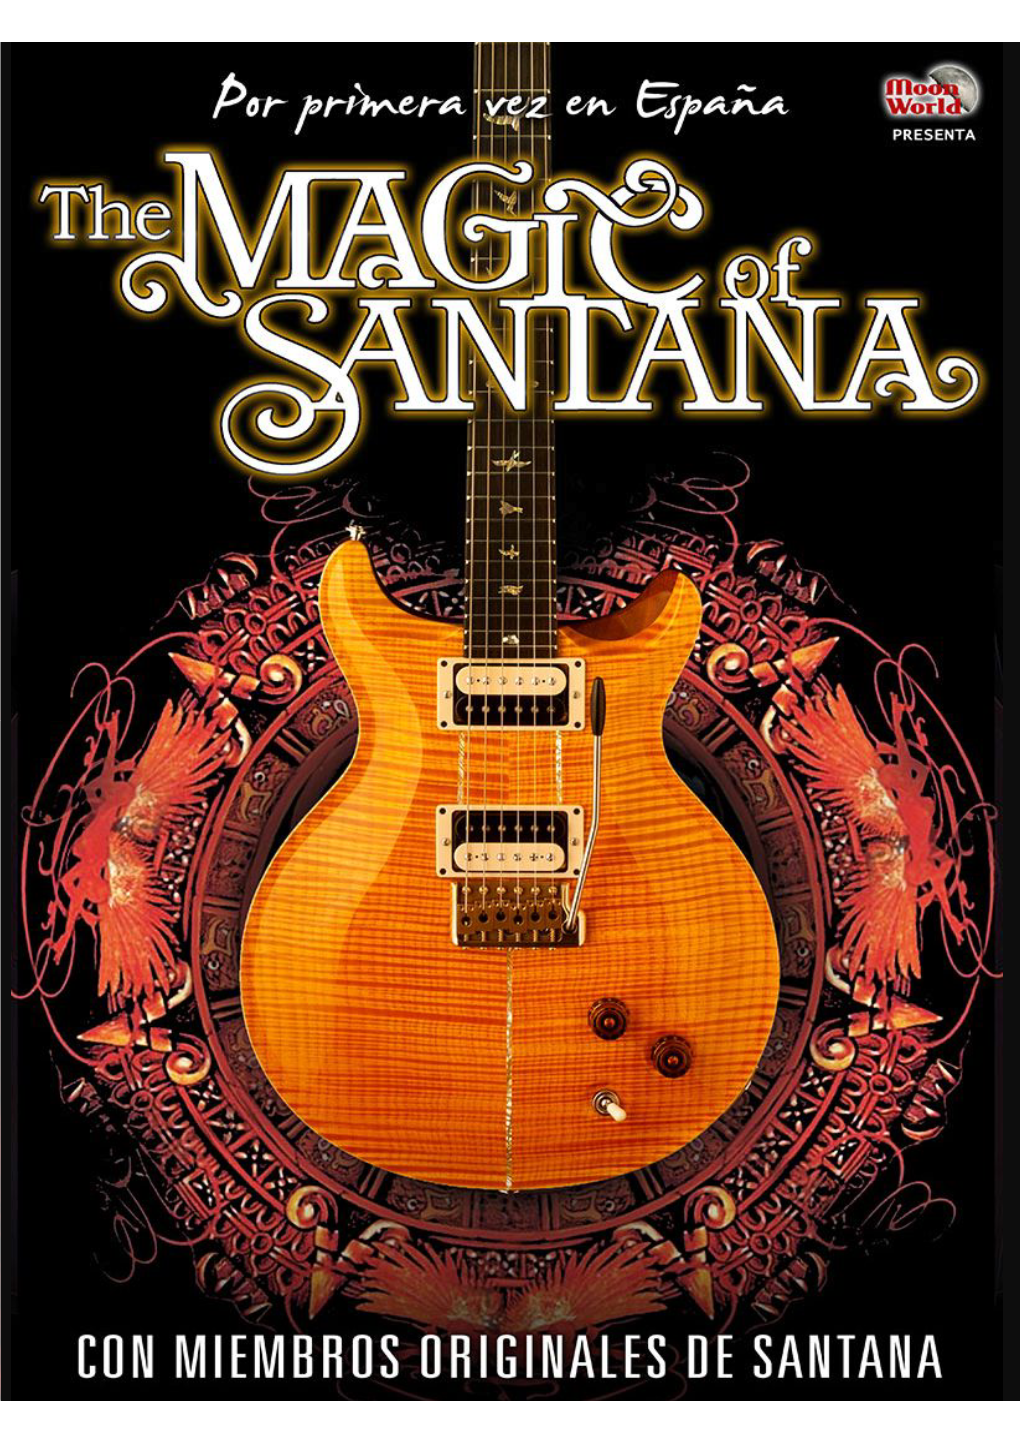 Carlos Santana Es Uno De Los Pocos Músicos Que Tiene Éxitos Actuales Durante Más De Cinco Décadas - En Los Años Sesenta, Setenta, Ochenta, Noventa Y Recientemente